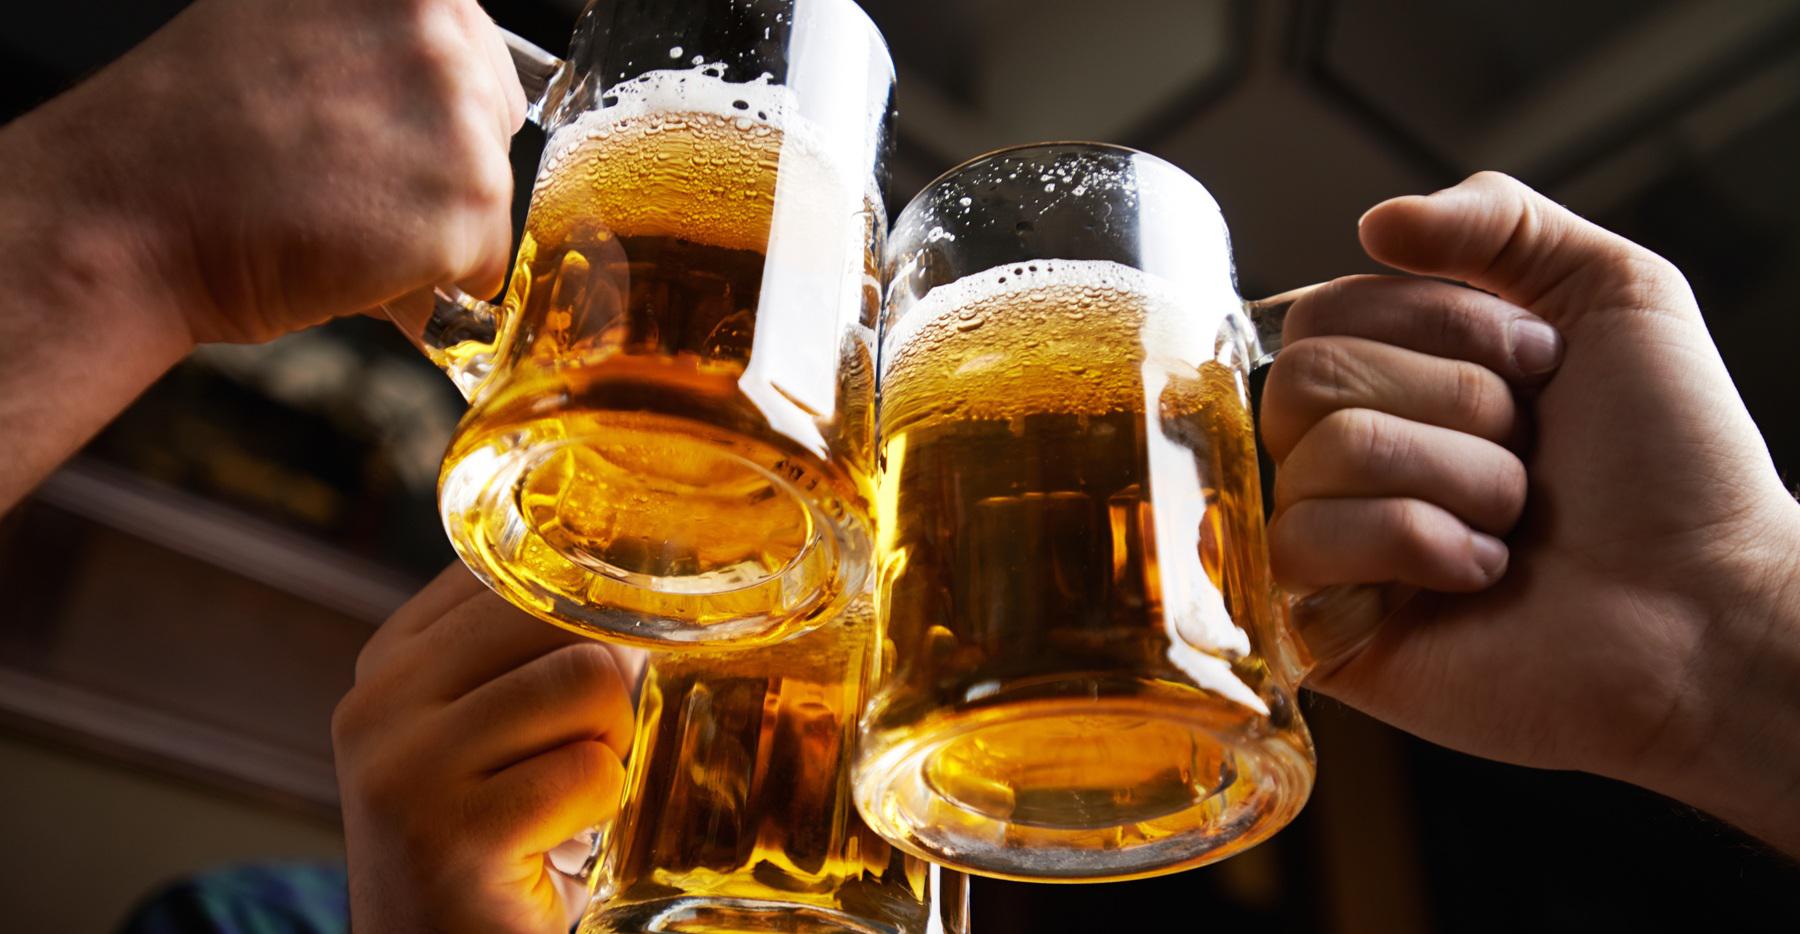 مشروبات كحولية فاسدة  تقتل 19 شخصاً في المغرب